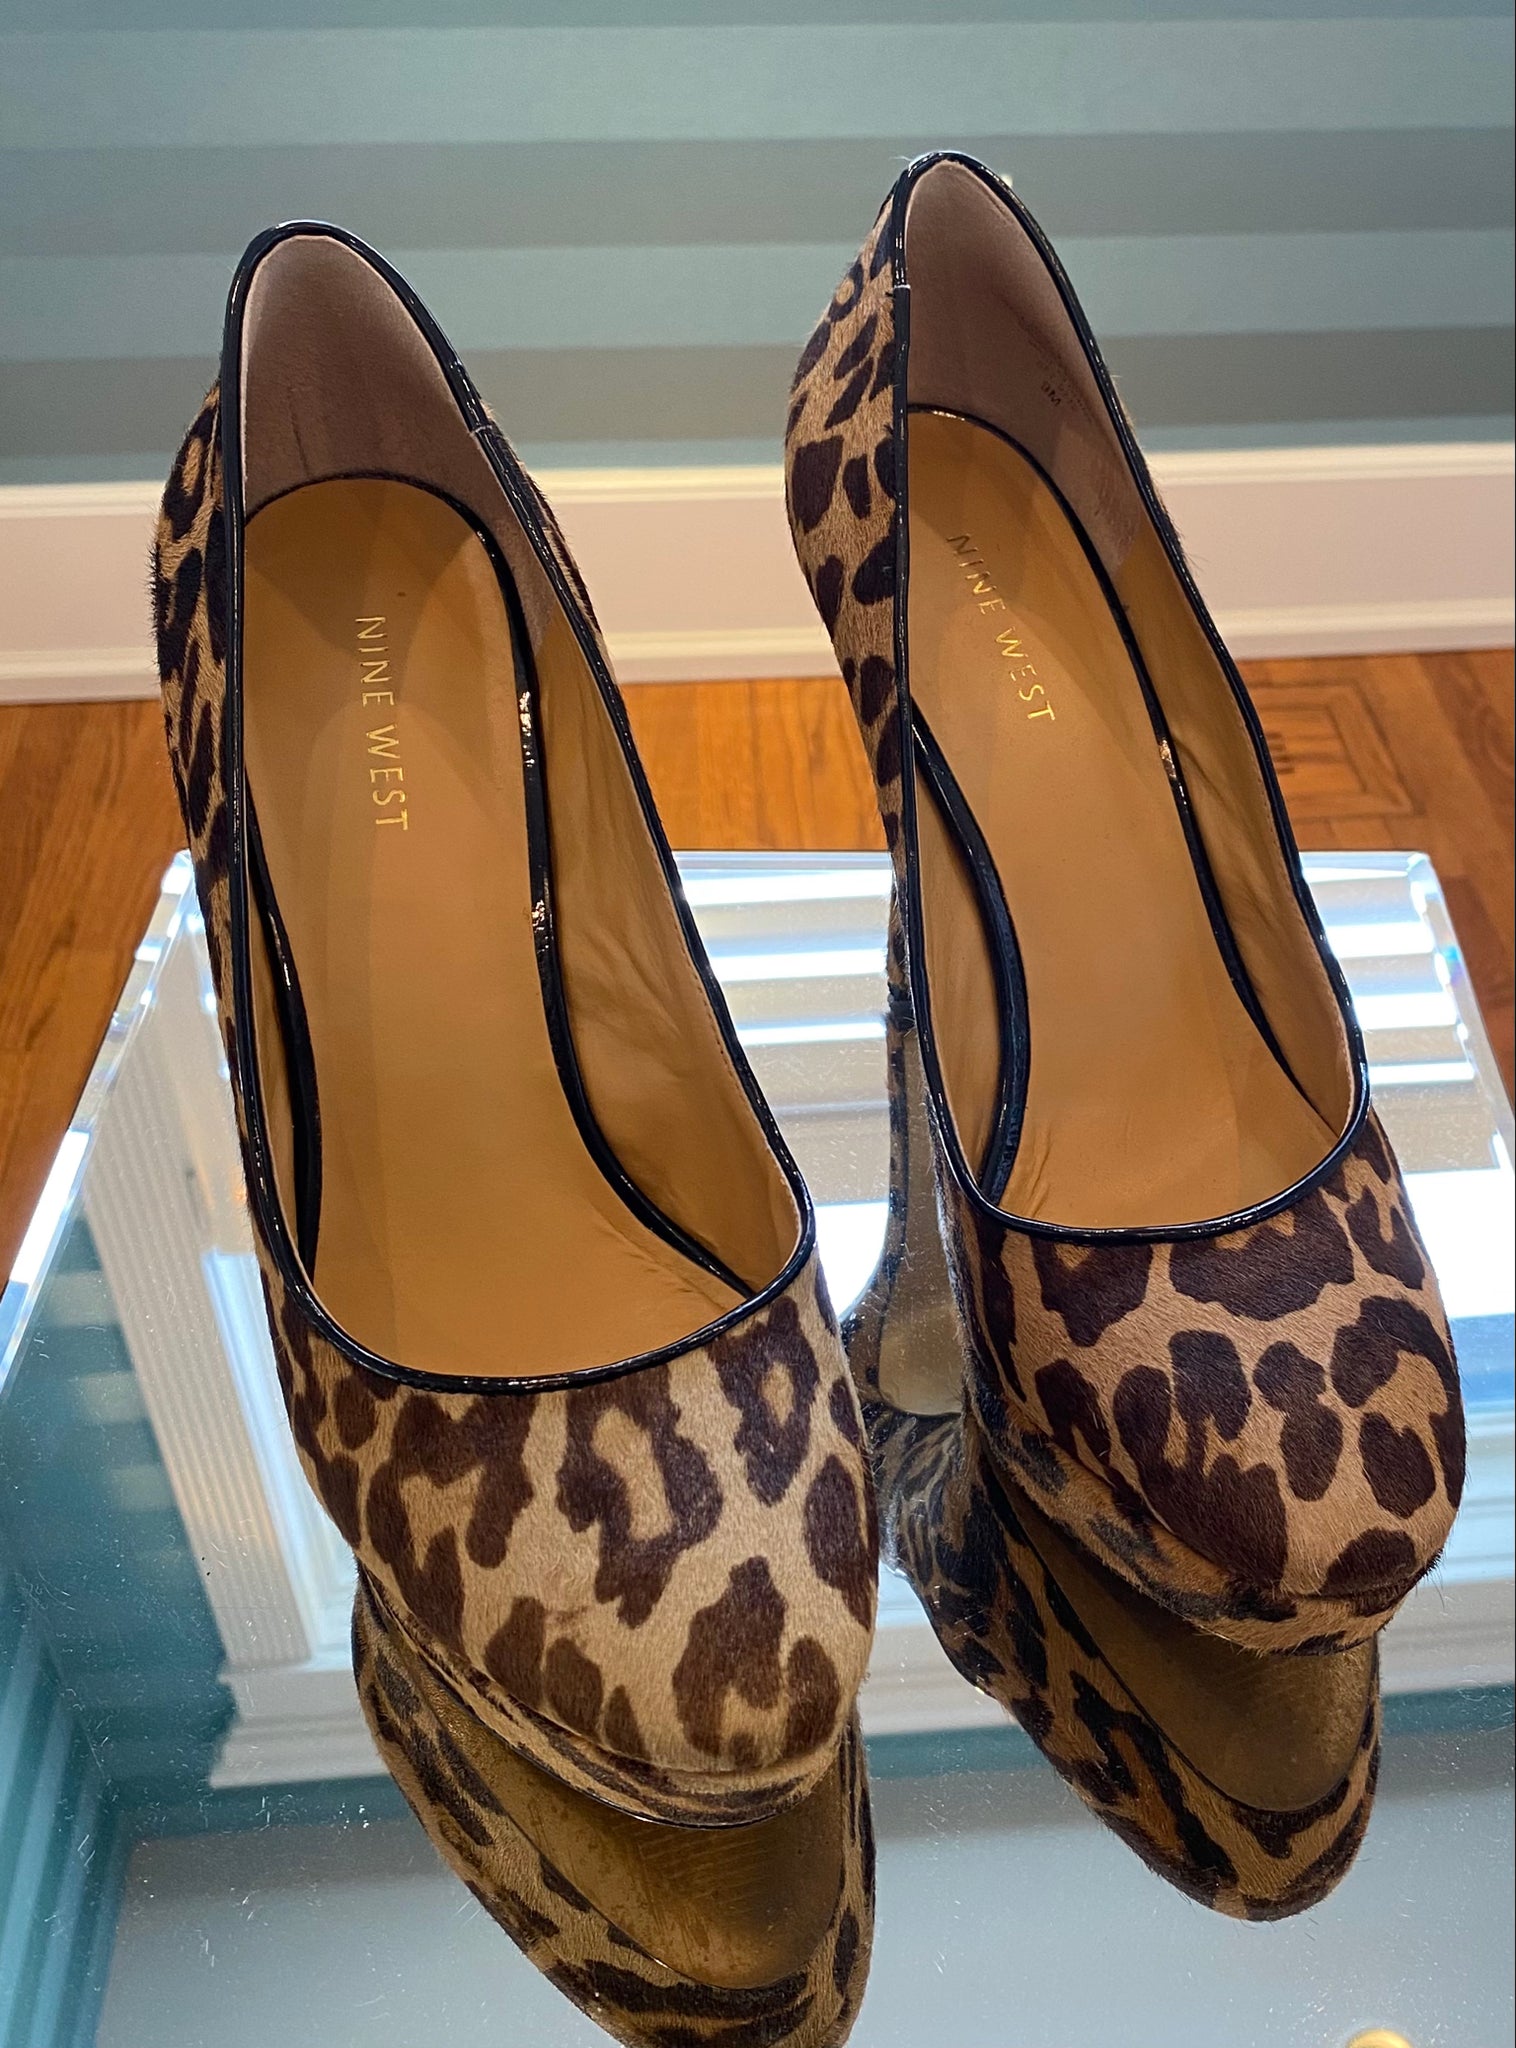 Nine West Leopard Print Shoes – The Bliss Chic Boutique